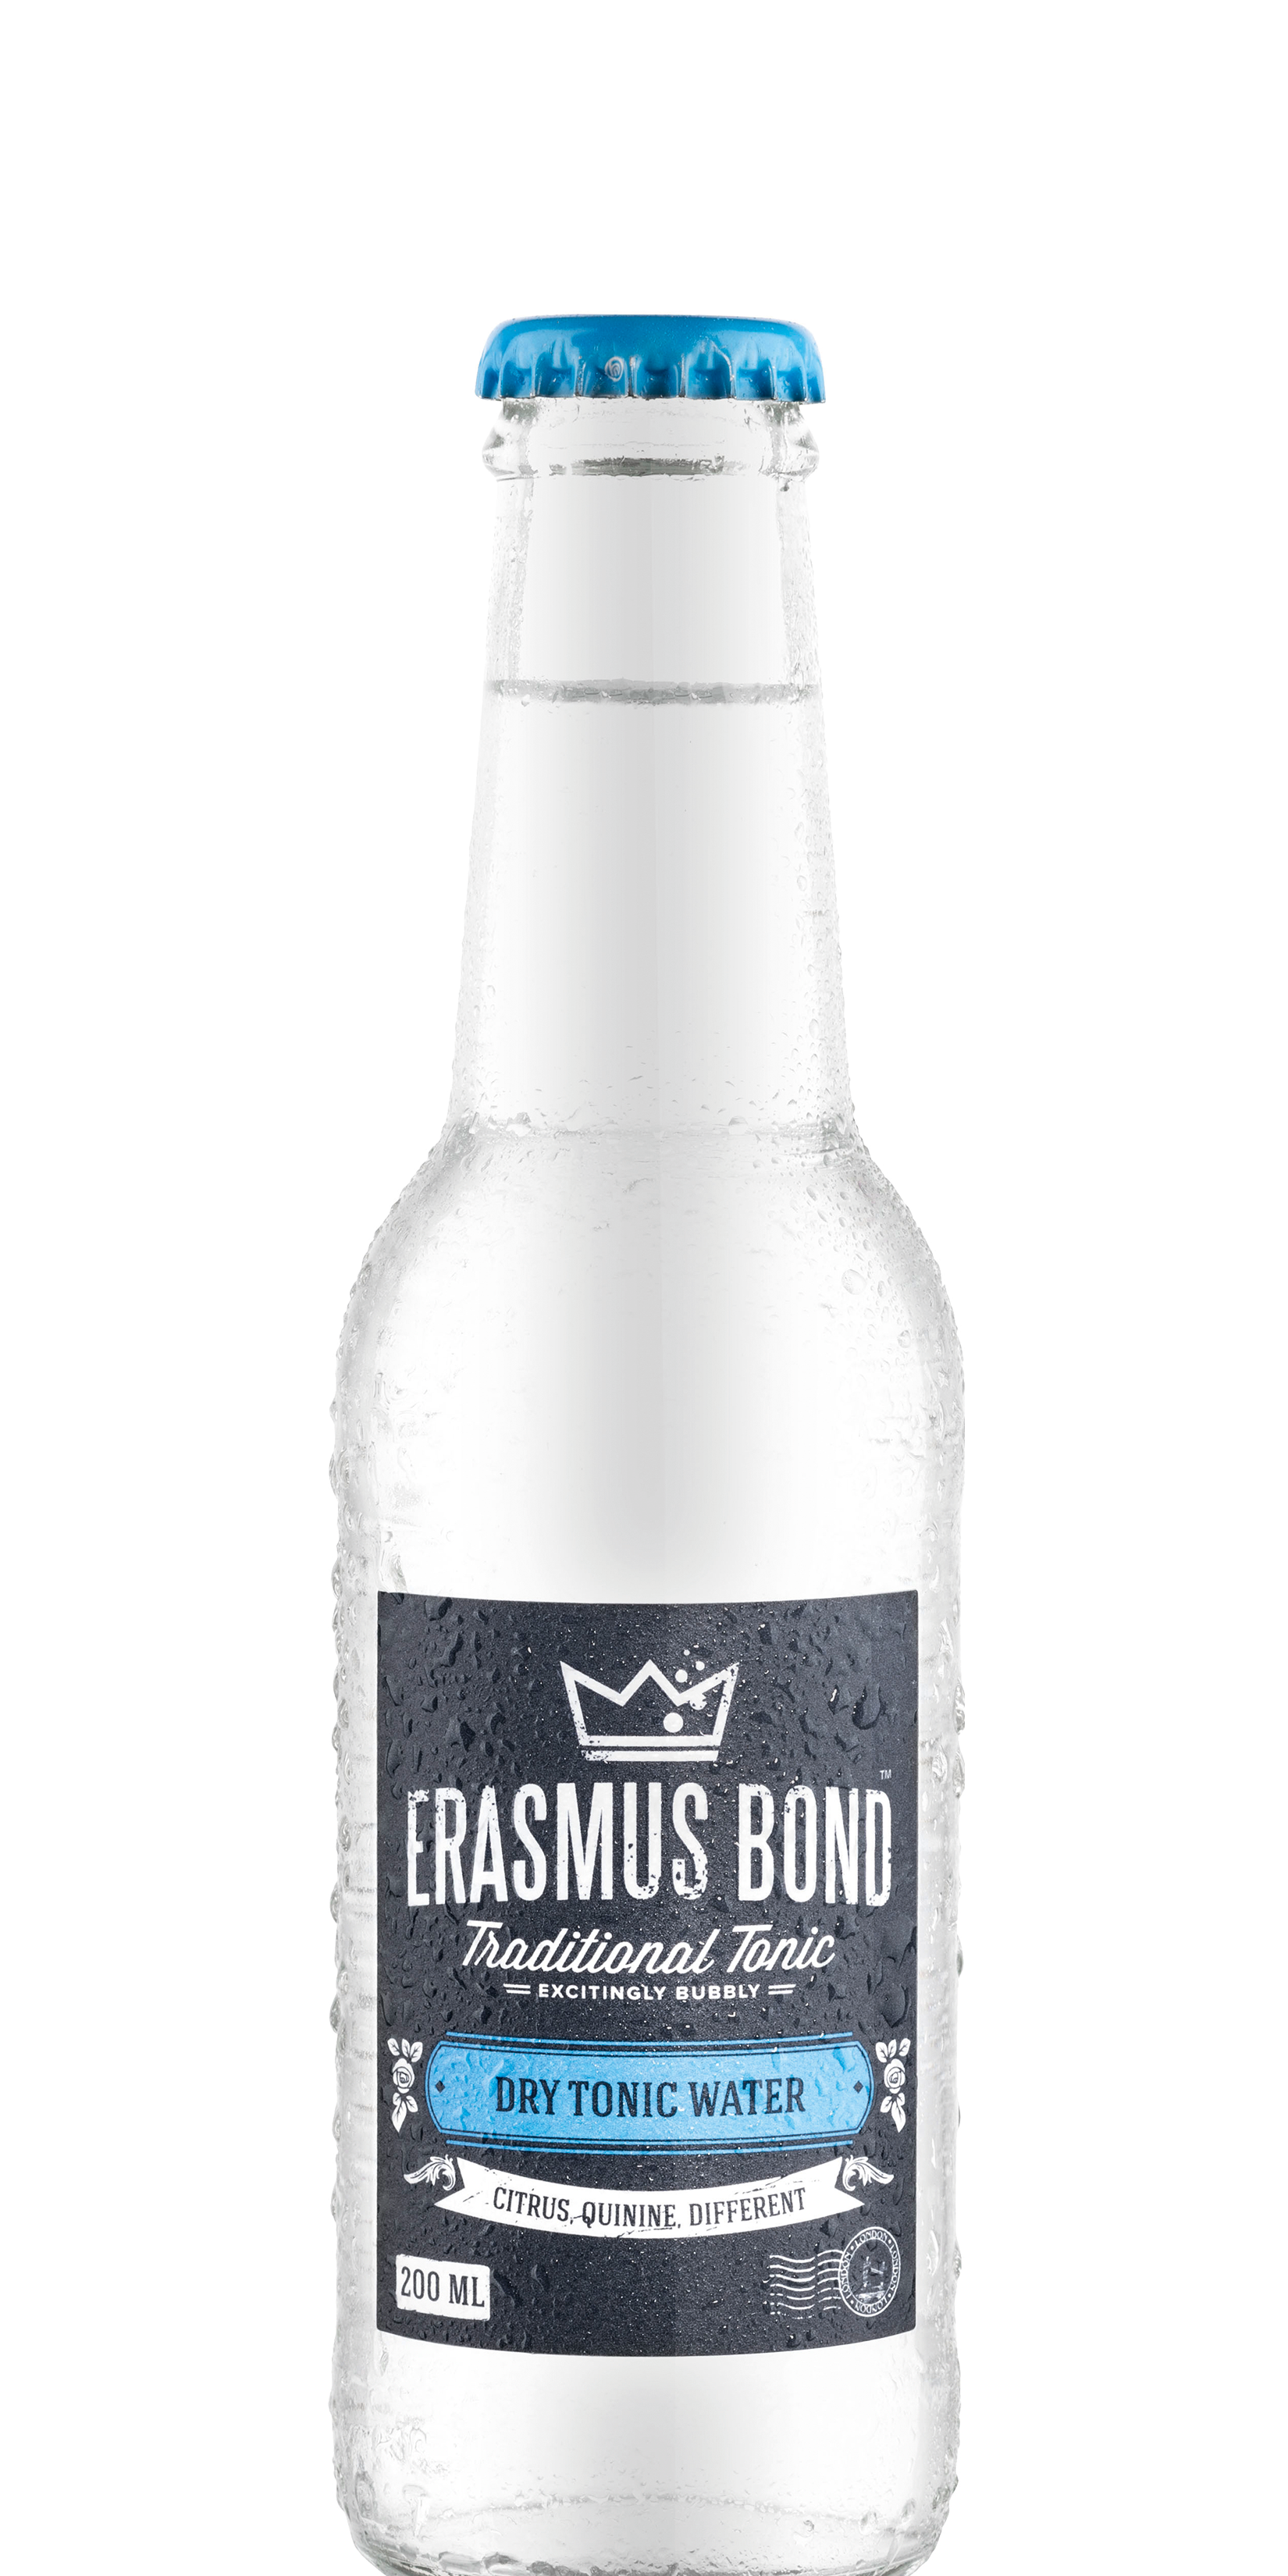 Erasmus-Bond-Dry-Tonic-Water-200ml.png